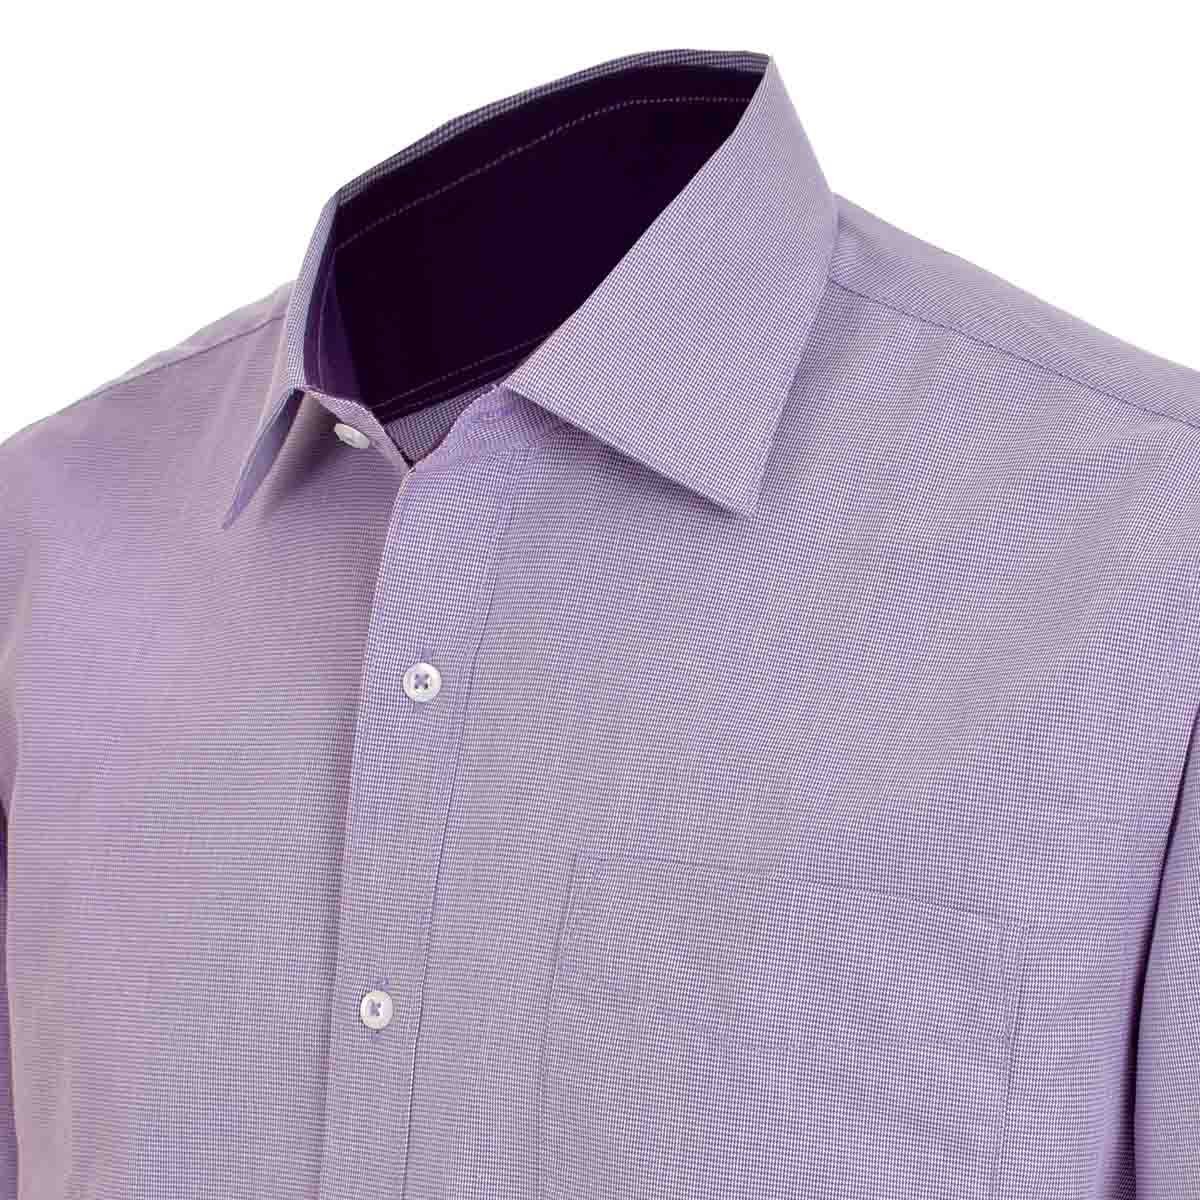 Camisa de Vestir Slim Fit Color Morado Combinado Nina Ricci para Caballero